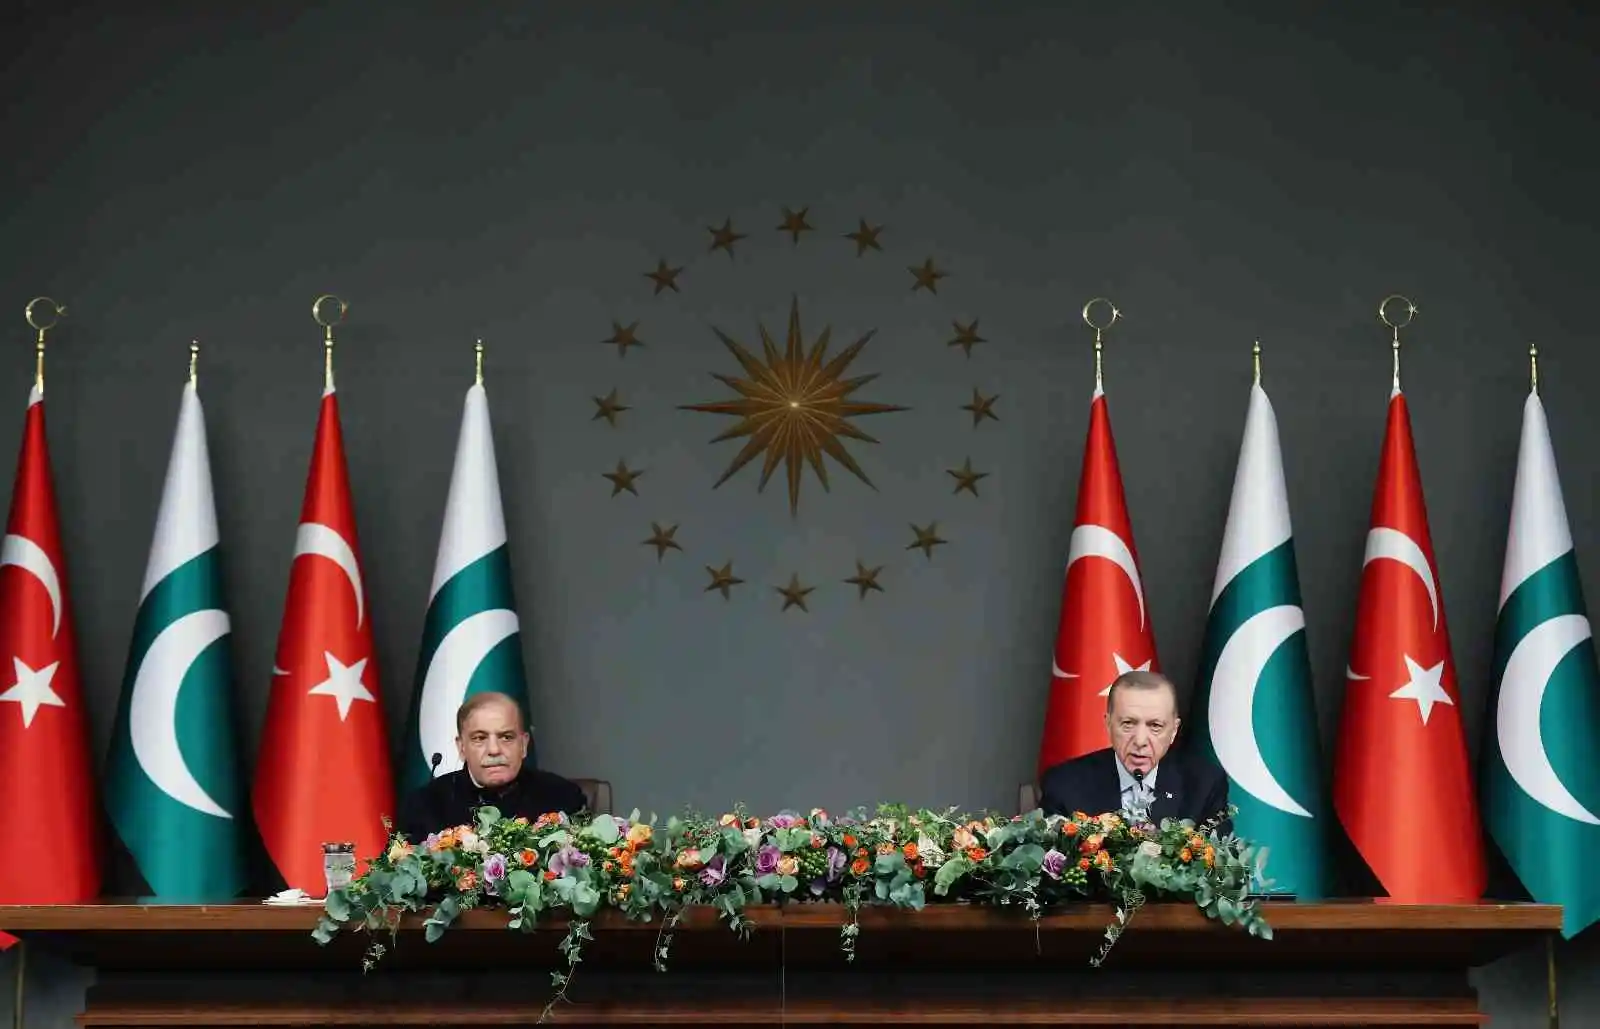 Cumhurbaşkanı Erdoğan: "Pakistan'la 5 milyar dolarlık ticaret hacmi hedefimize ulaşmak için gerekli iradeye ve kararlılığa sahibiz"
